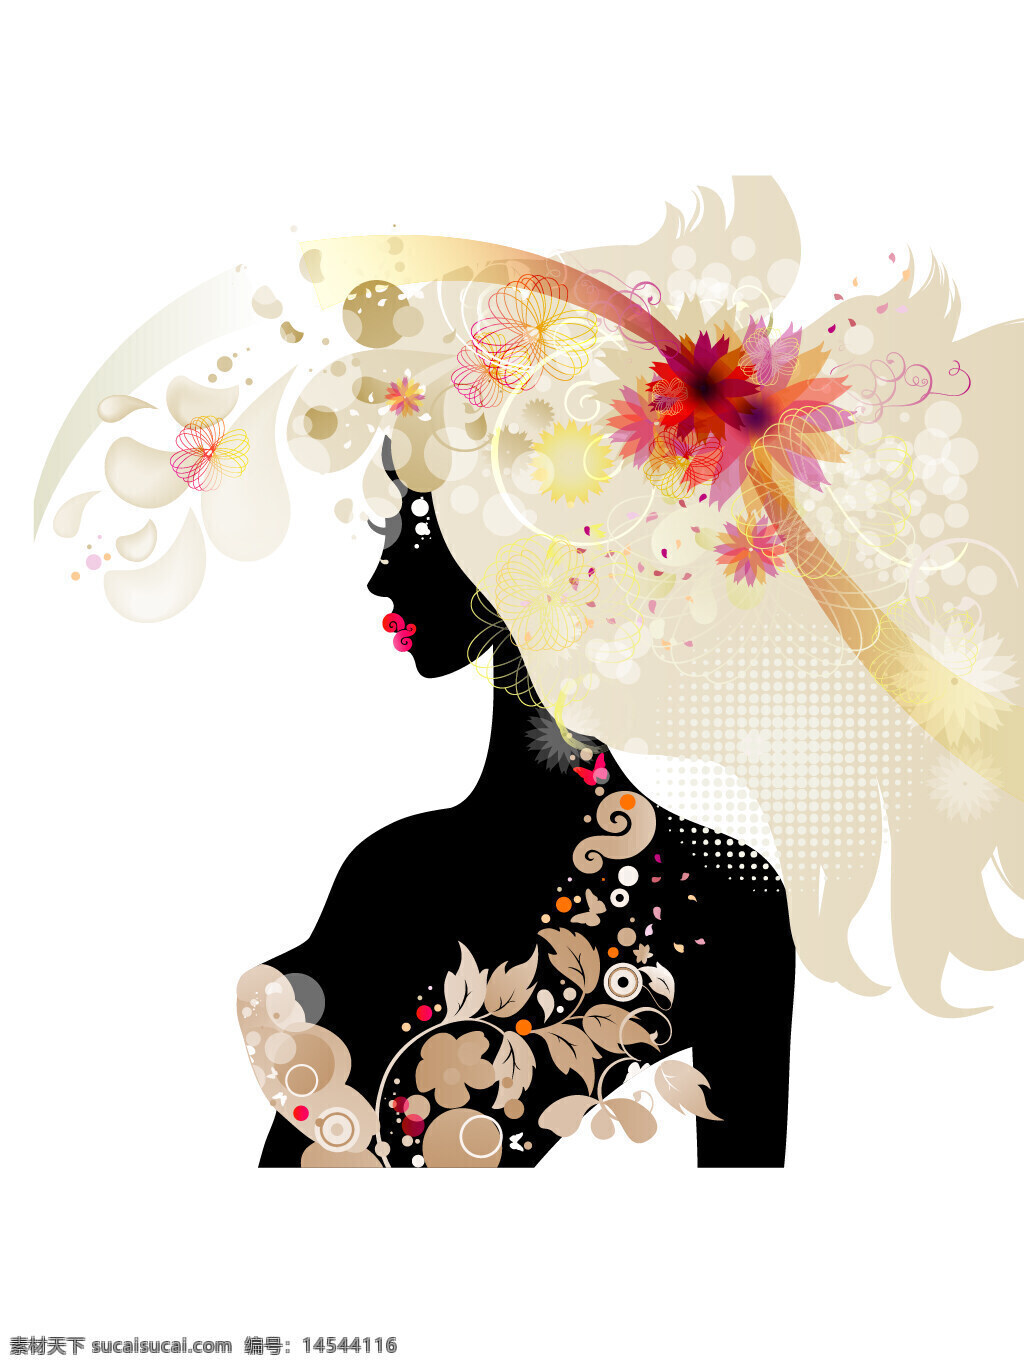 妇女节素材 38 三八 女神节 女性 女人 美女 国际妇女节 3月8日 矢量素材 海报素材 广告素材 广告装饰